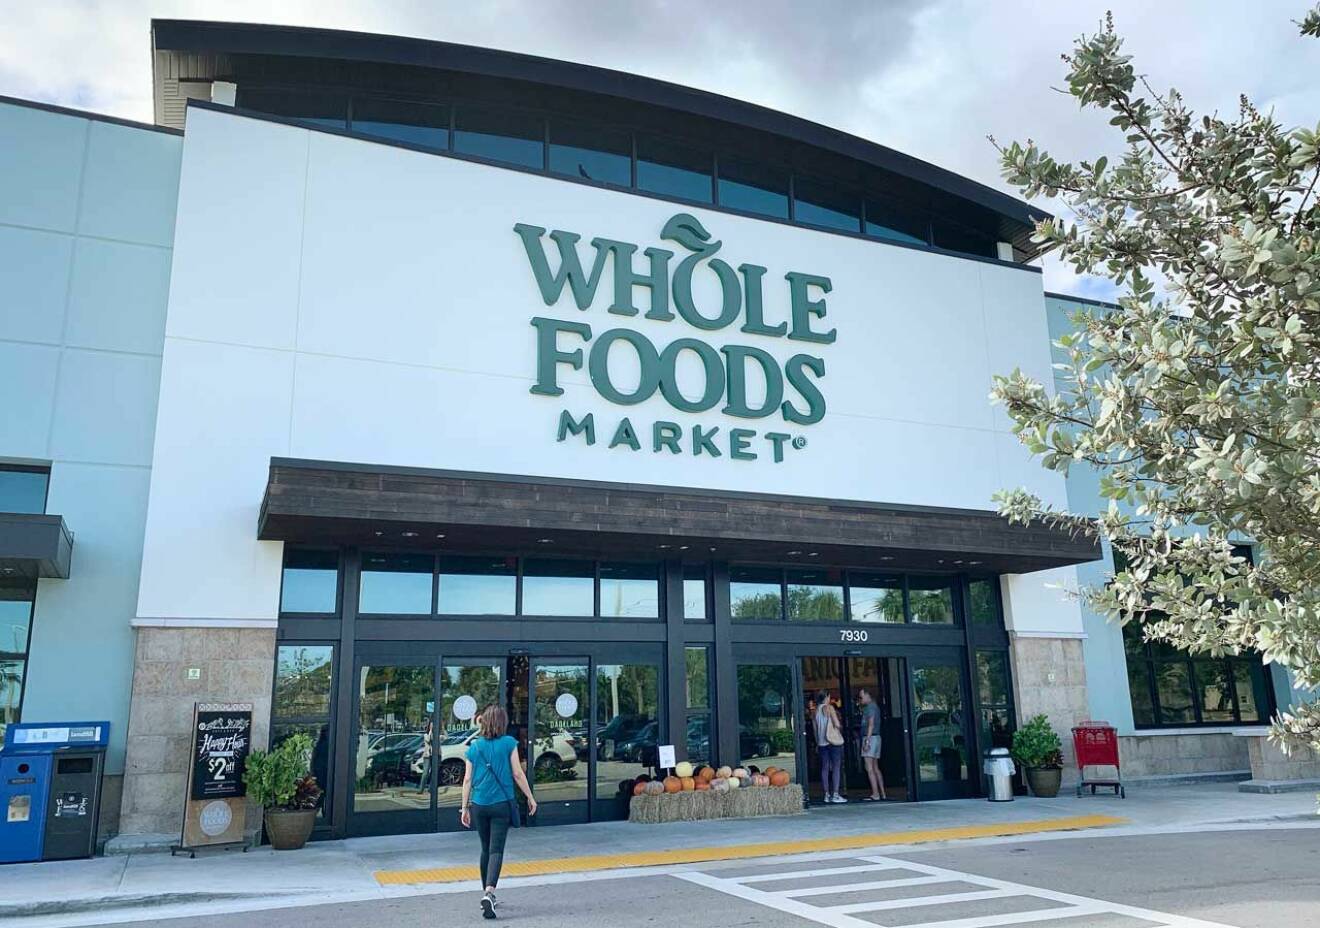 Exkklusiva mataffären Whole Foods i Miami där prinsessan Madeleine och Chris O'Neill brukar handla.